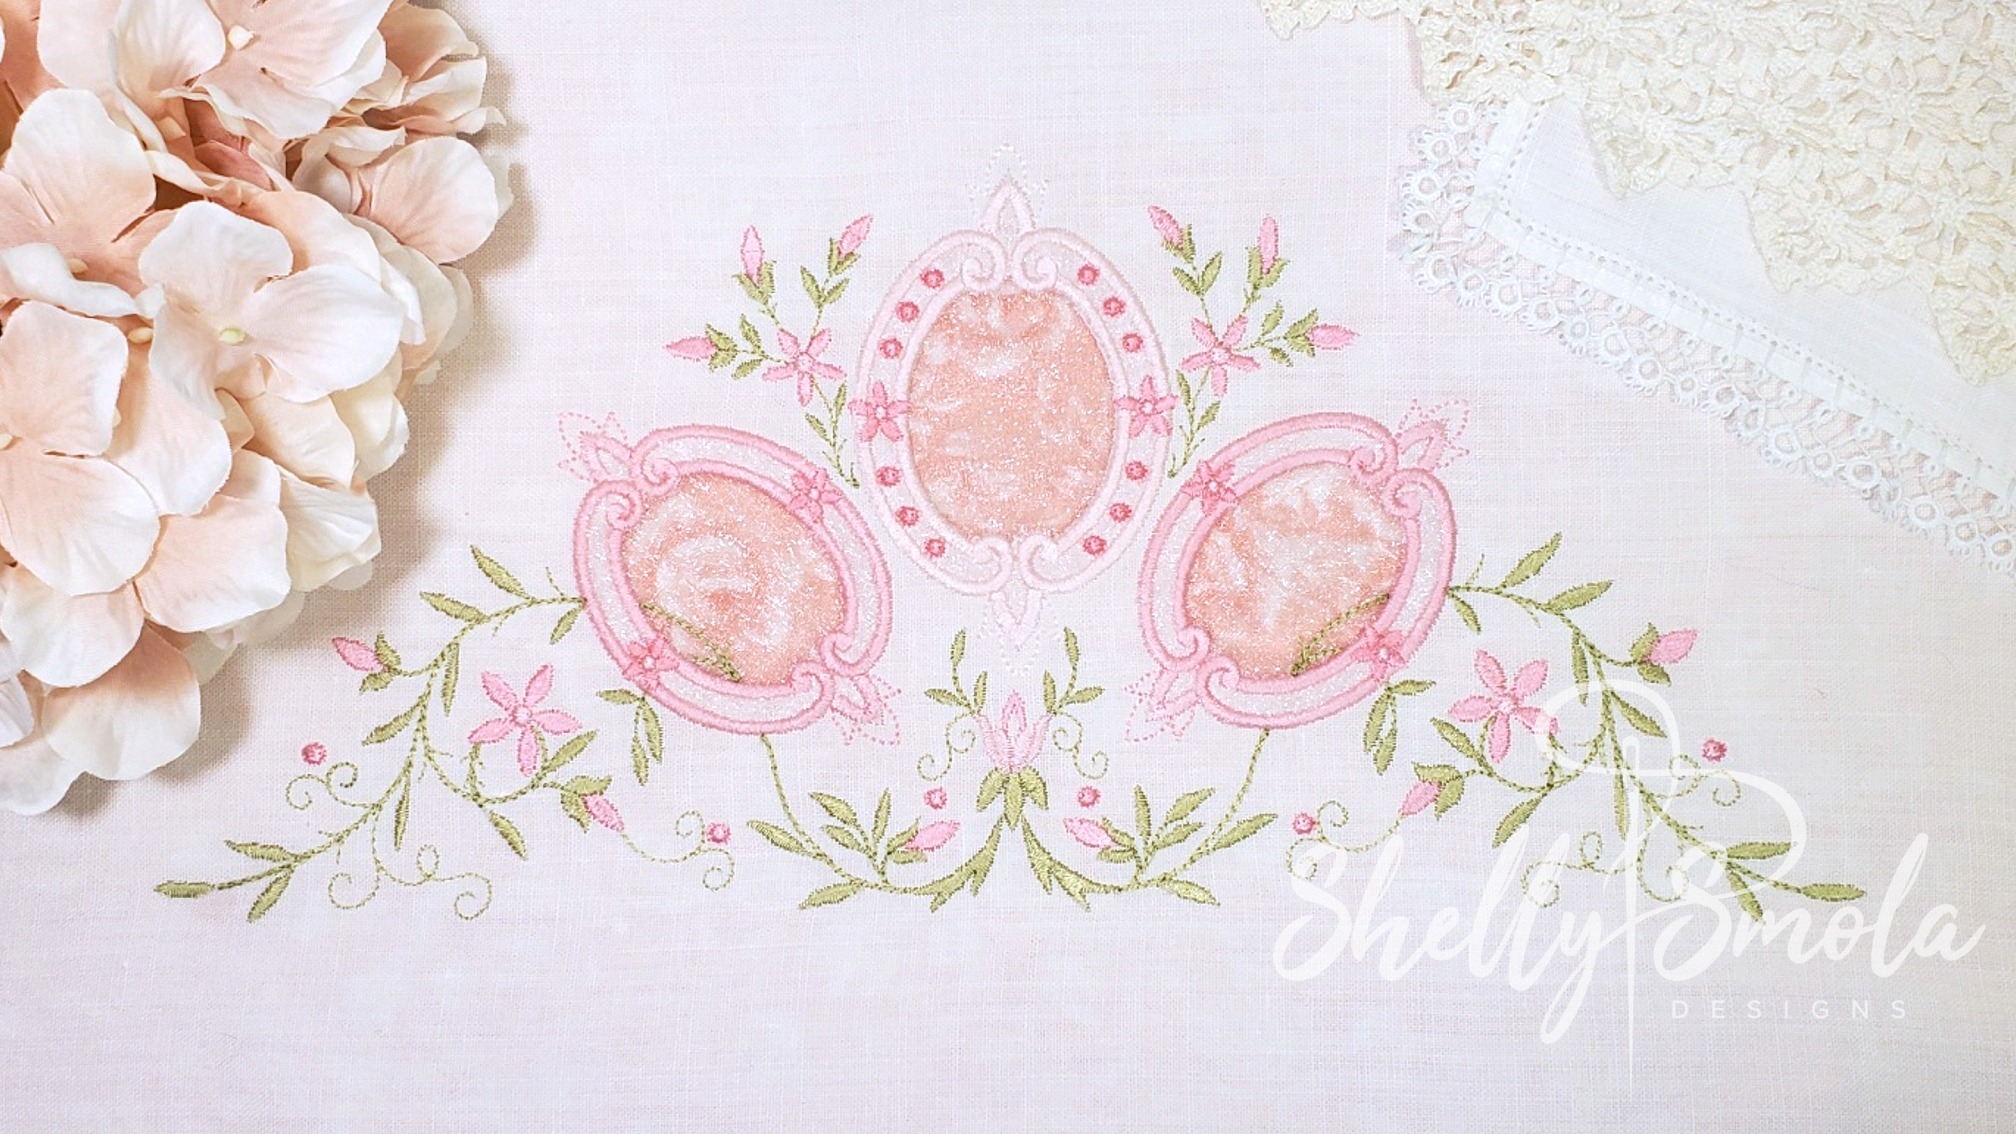 Cinderella Cutouts Pillow Case by Shelly Smola